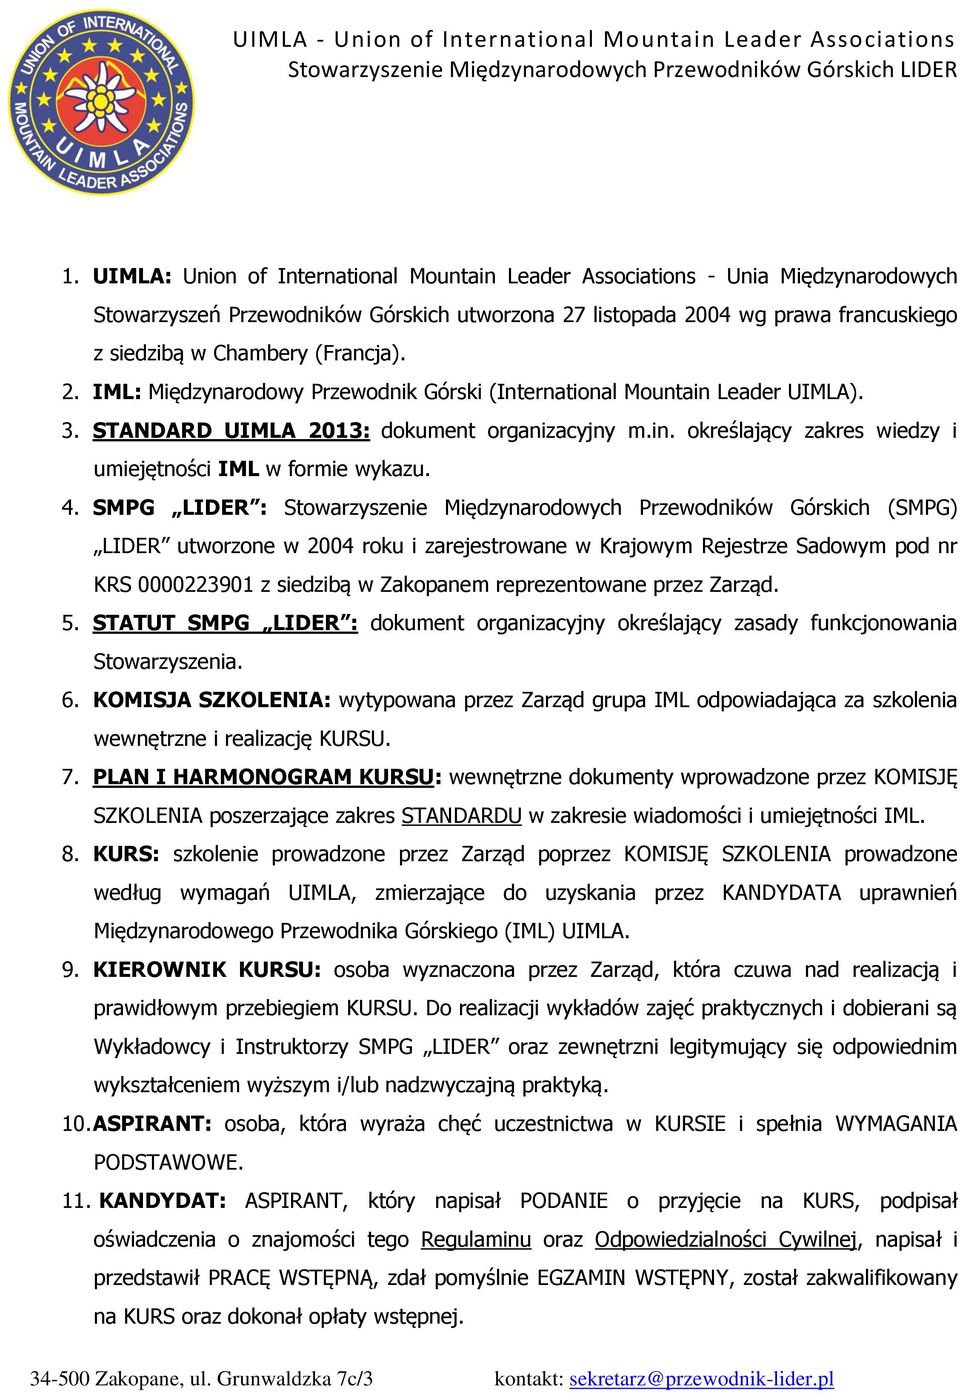 4. SMPG LIDER : Stowarzyszenie Międzynarodowych Przewodników Górskich (SMPG) LIDER utworzone w 2004 roku i zarejestrowane w Krajowym Rejestrze Sadowym pod nr KRS 0000223901 z siedzibą w Zakopanem